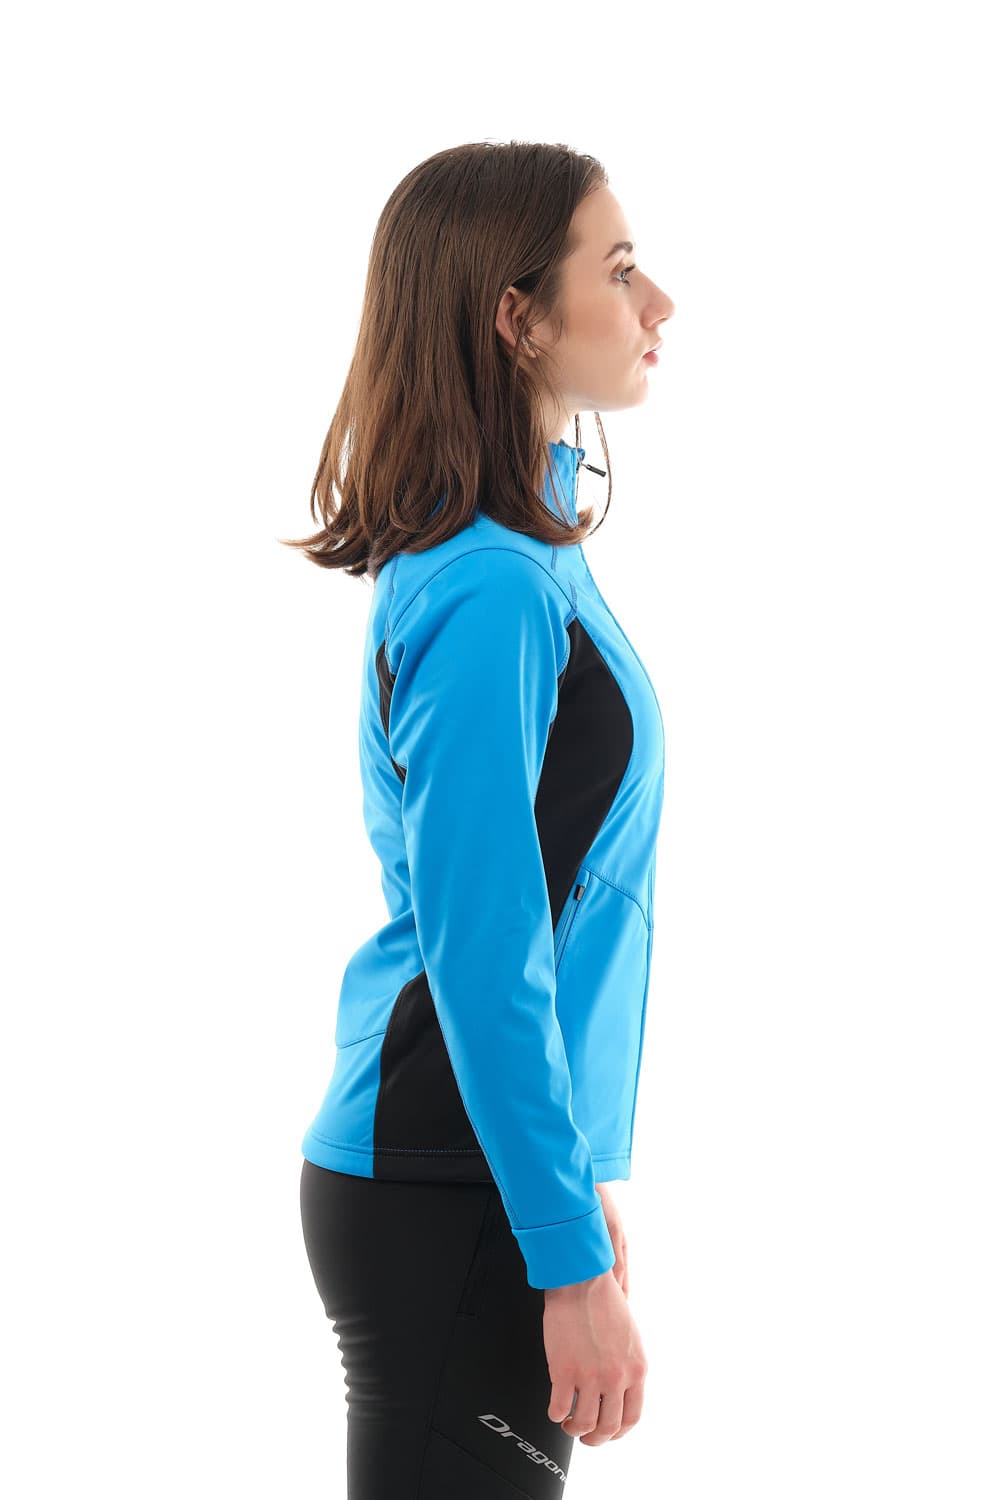 Куртка Explorer Blue женская, Softshell в интернет-магазине Мотомода